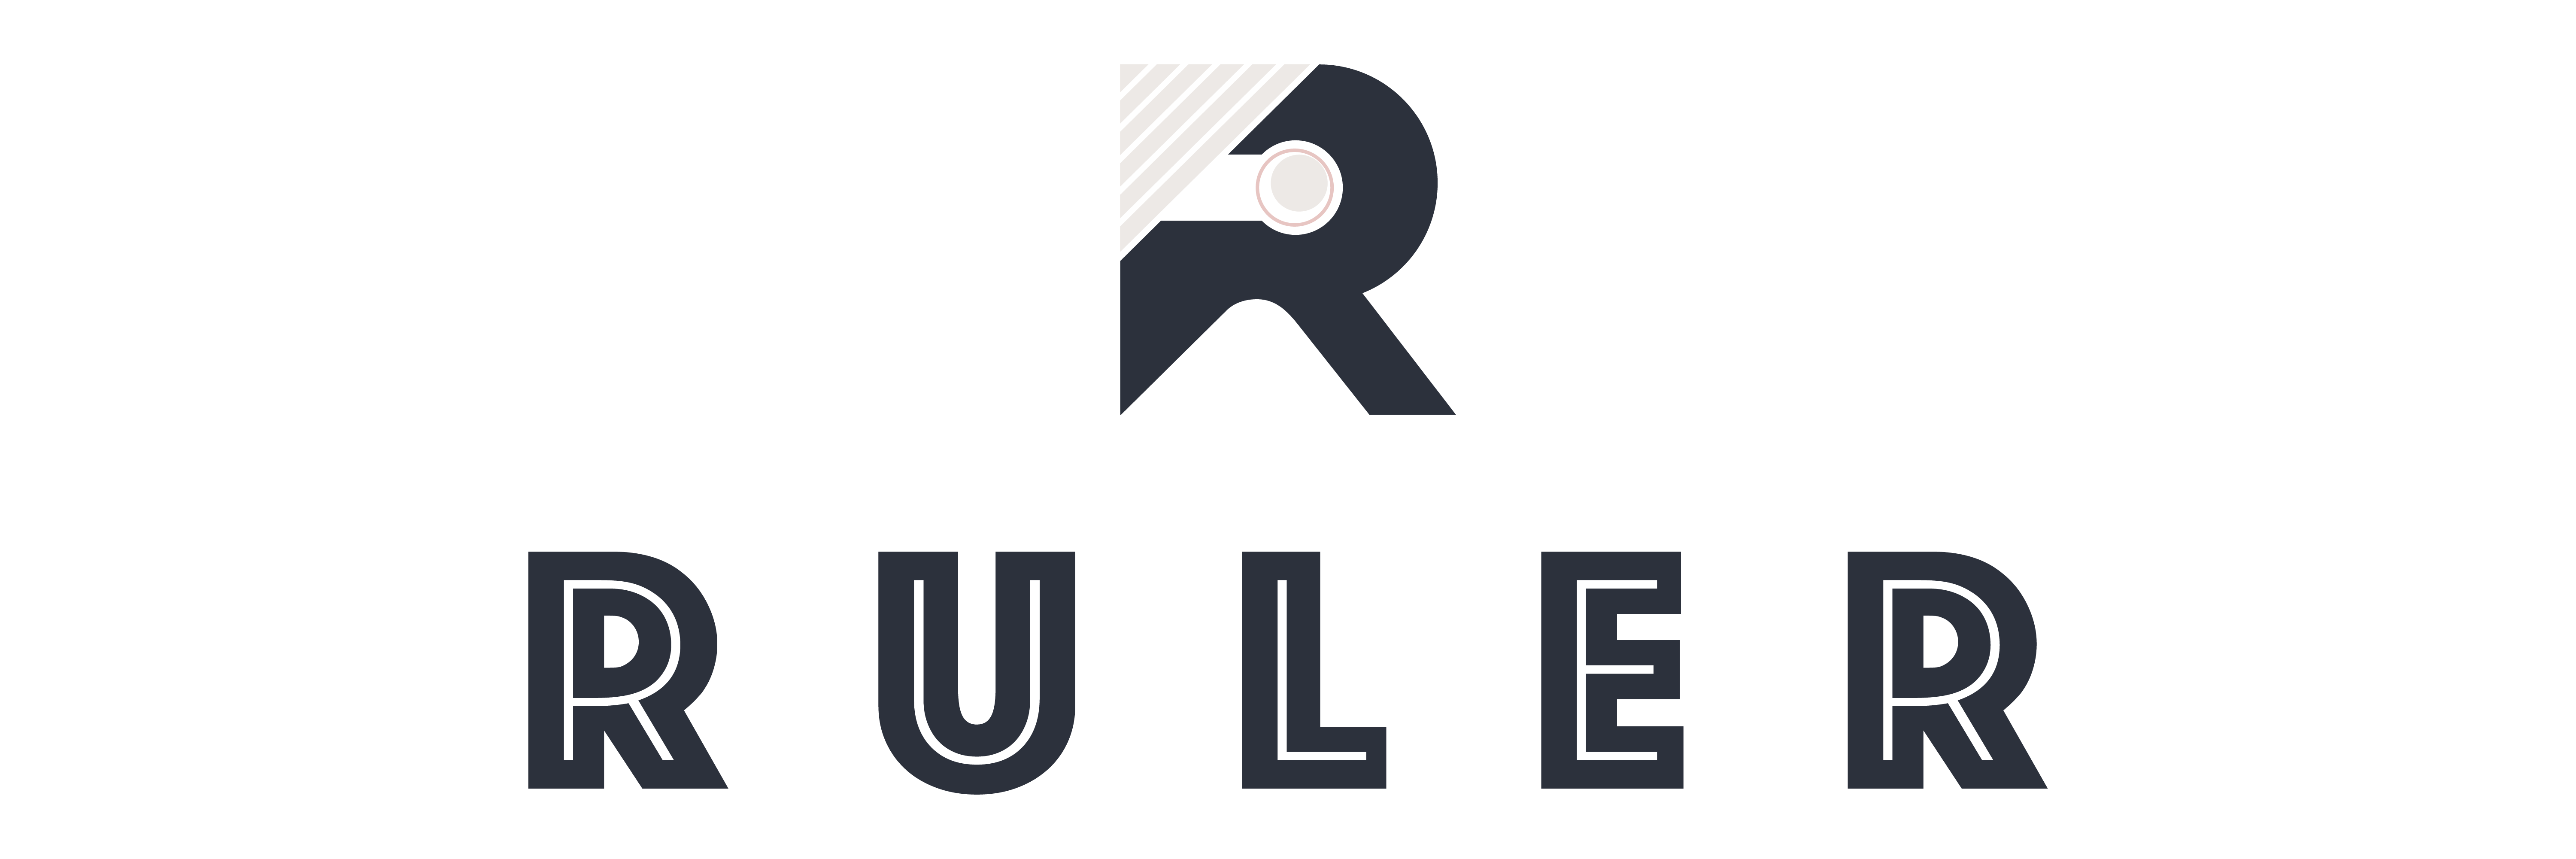 Full (logo + banner) - Ruler Protocol